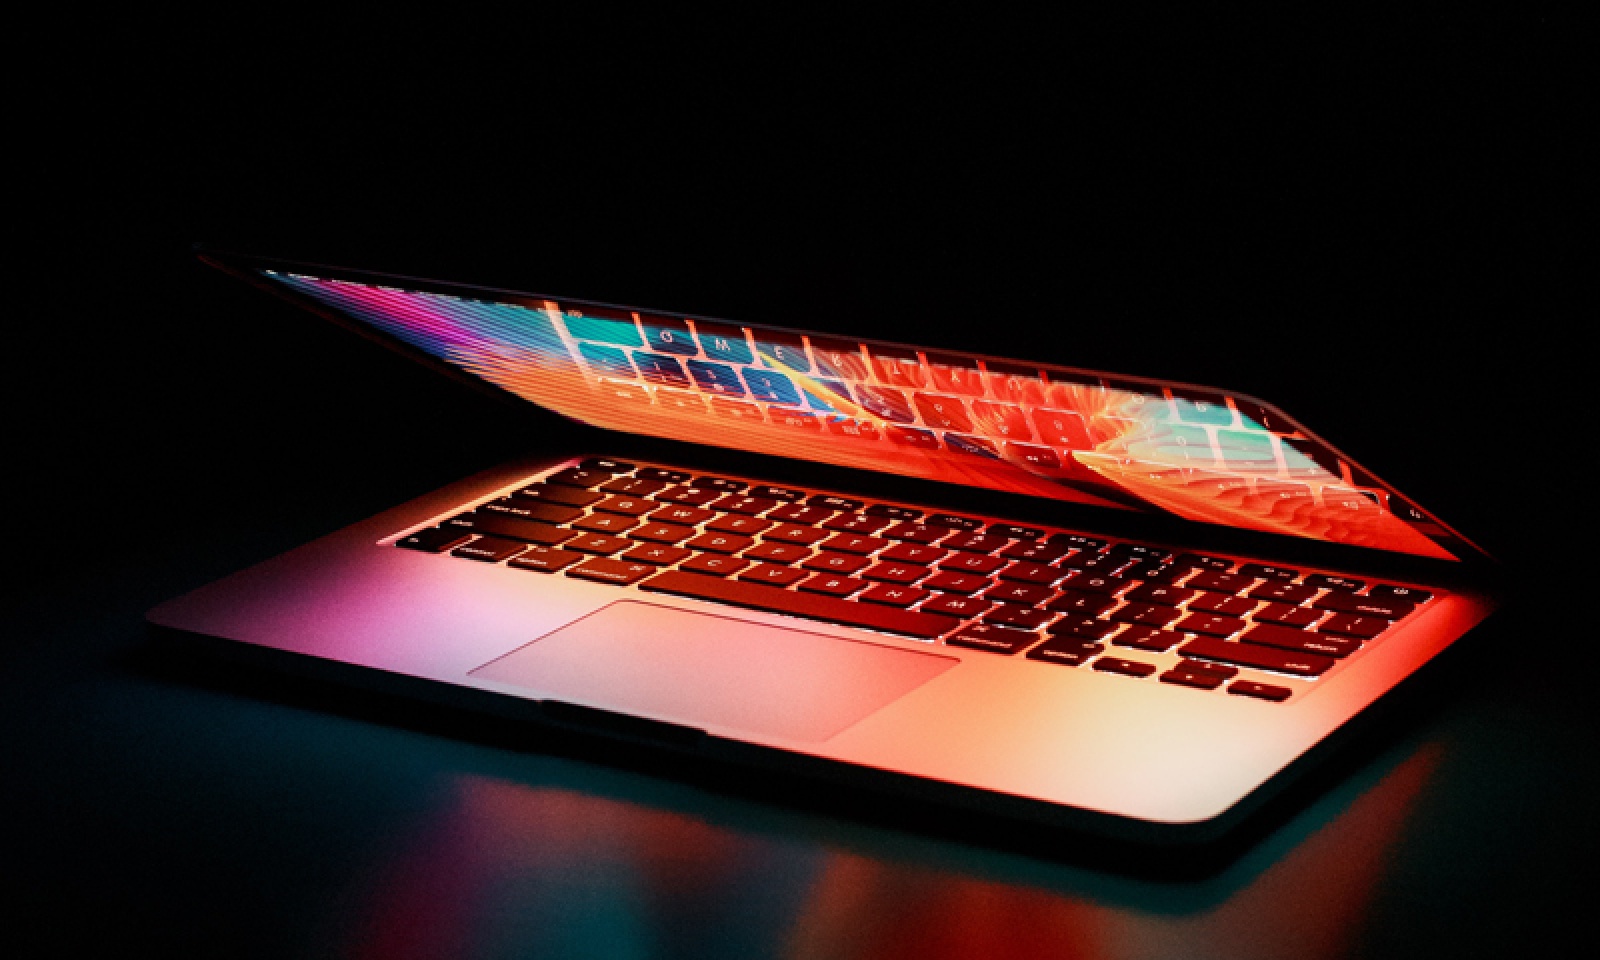 Bilden visar en dator som är halvt öppen där skärmen lyser från datorn och runtomkring är det mörkt